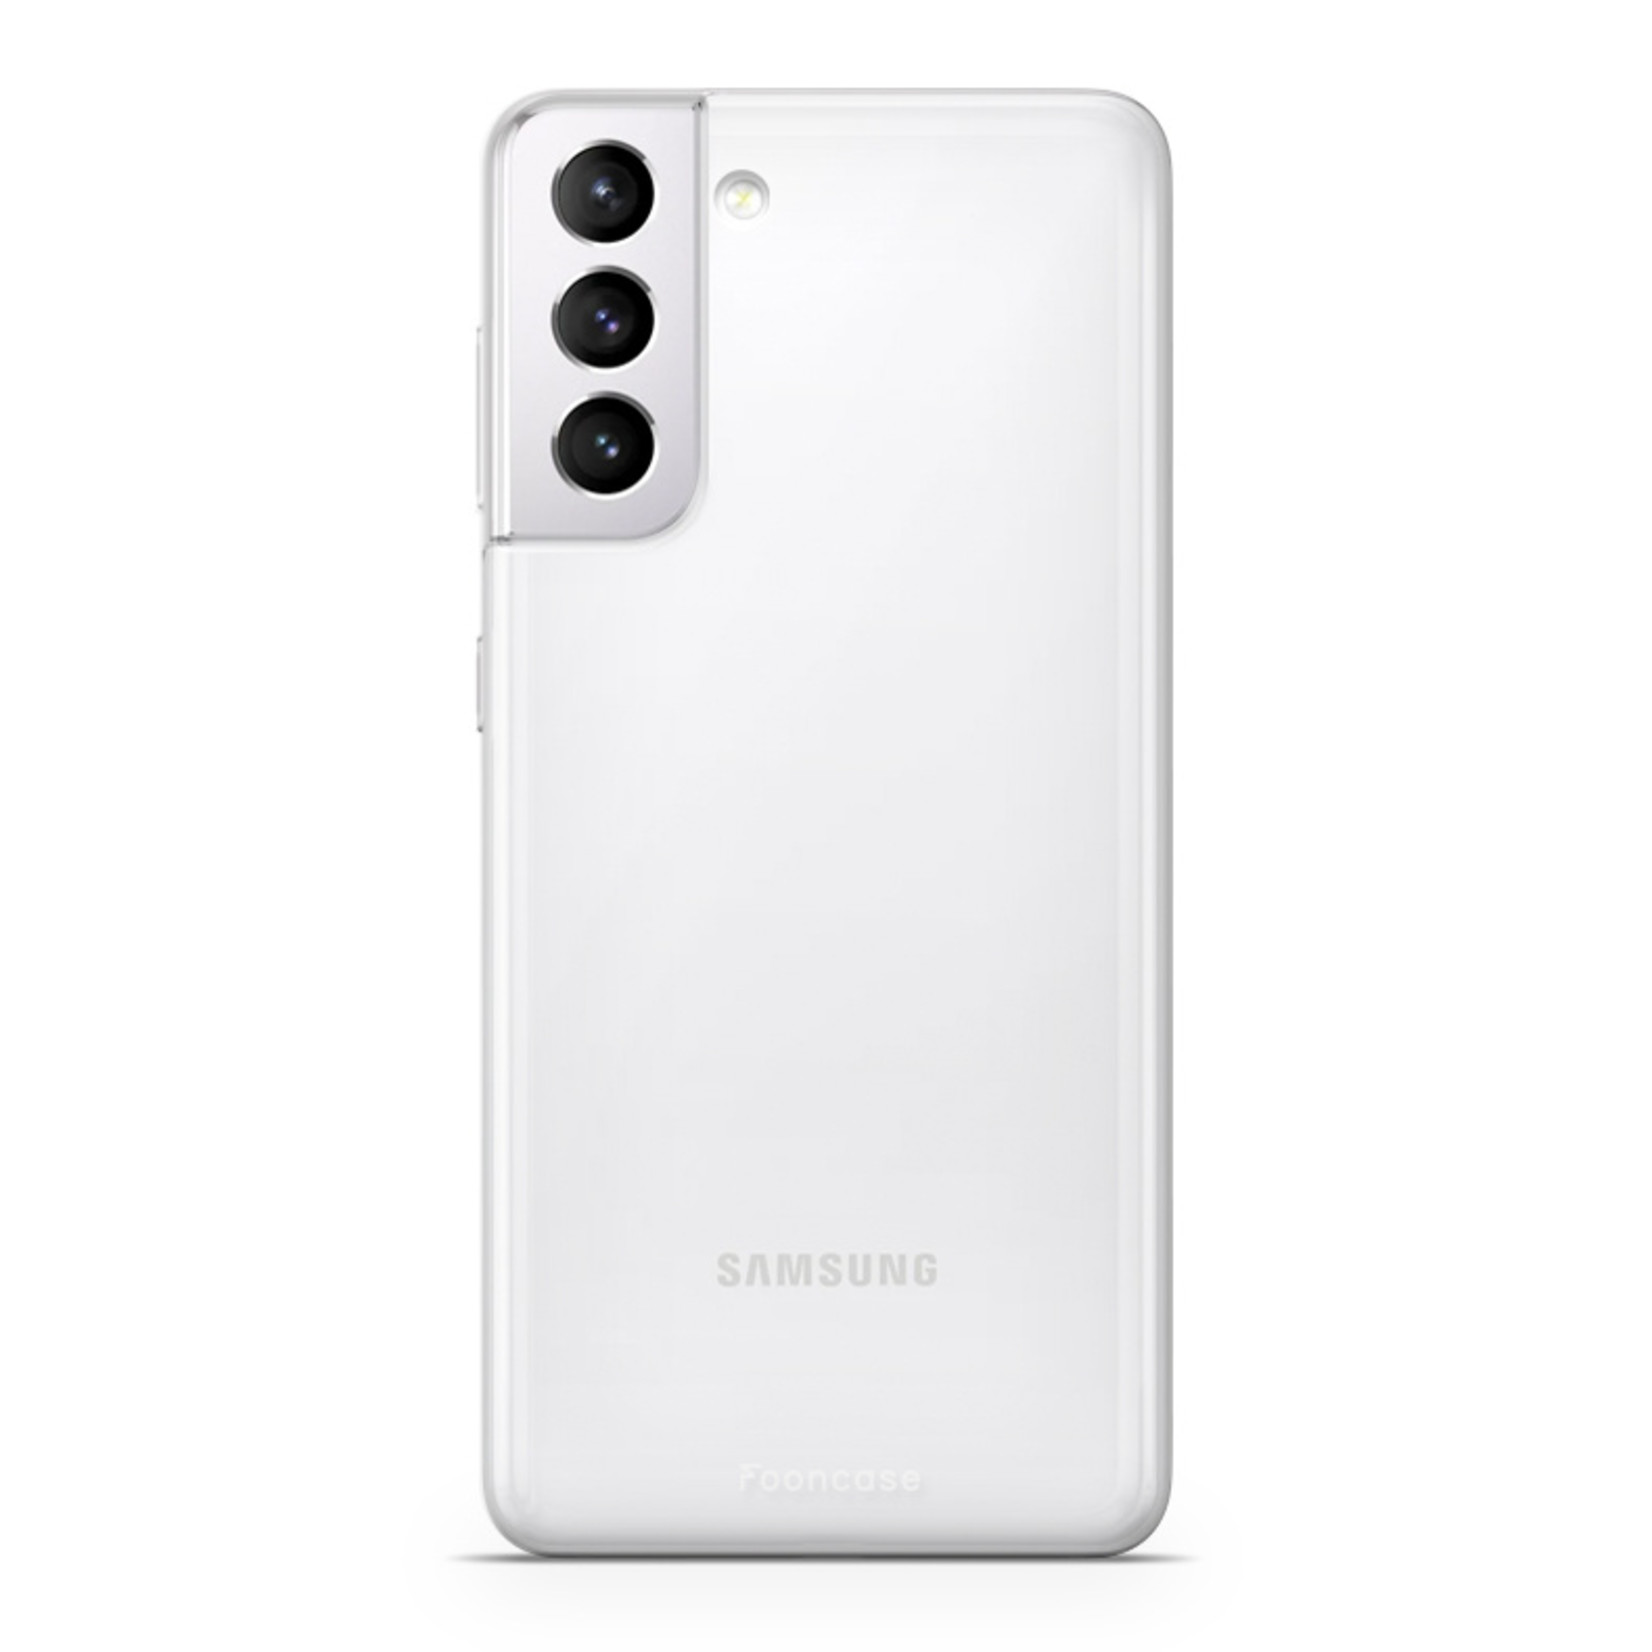 FOONCASE Samsung Galaxy S21 Case - Transparent